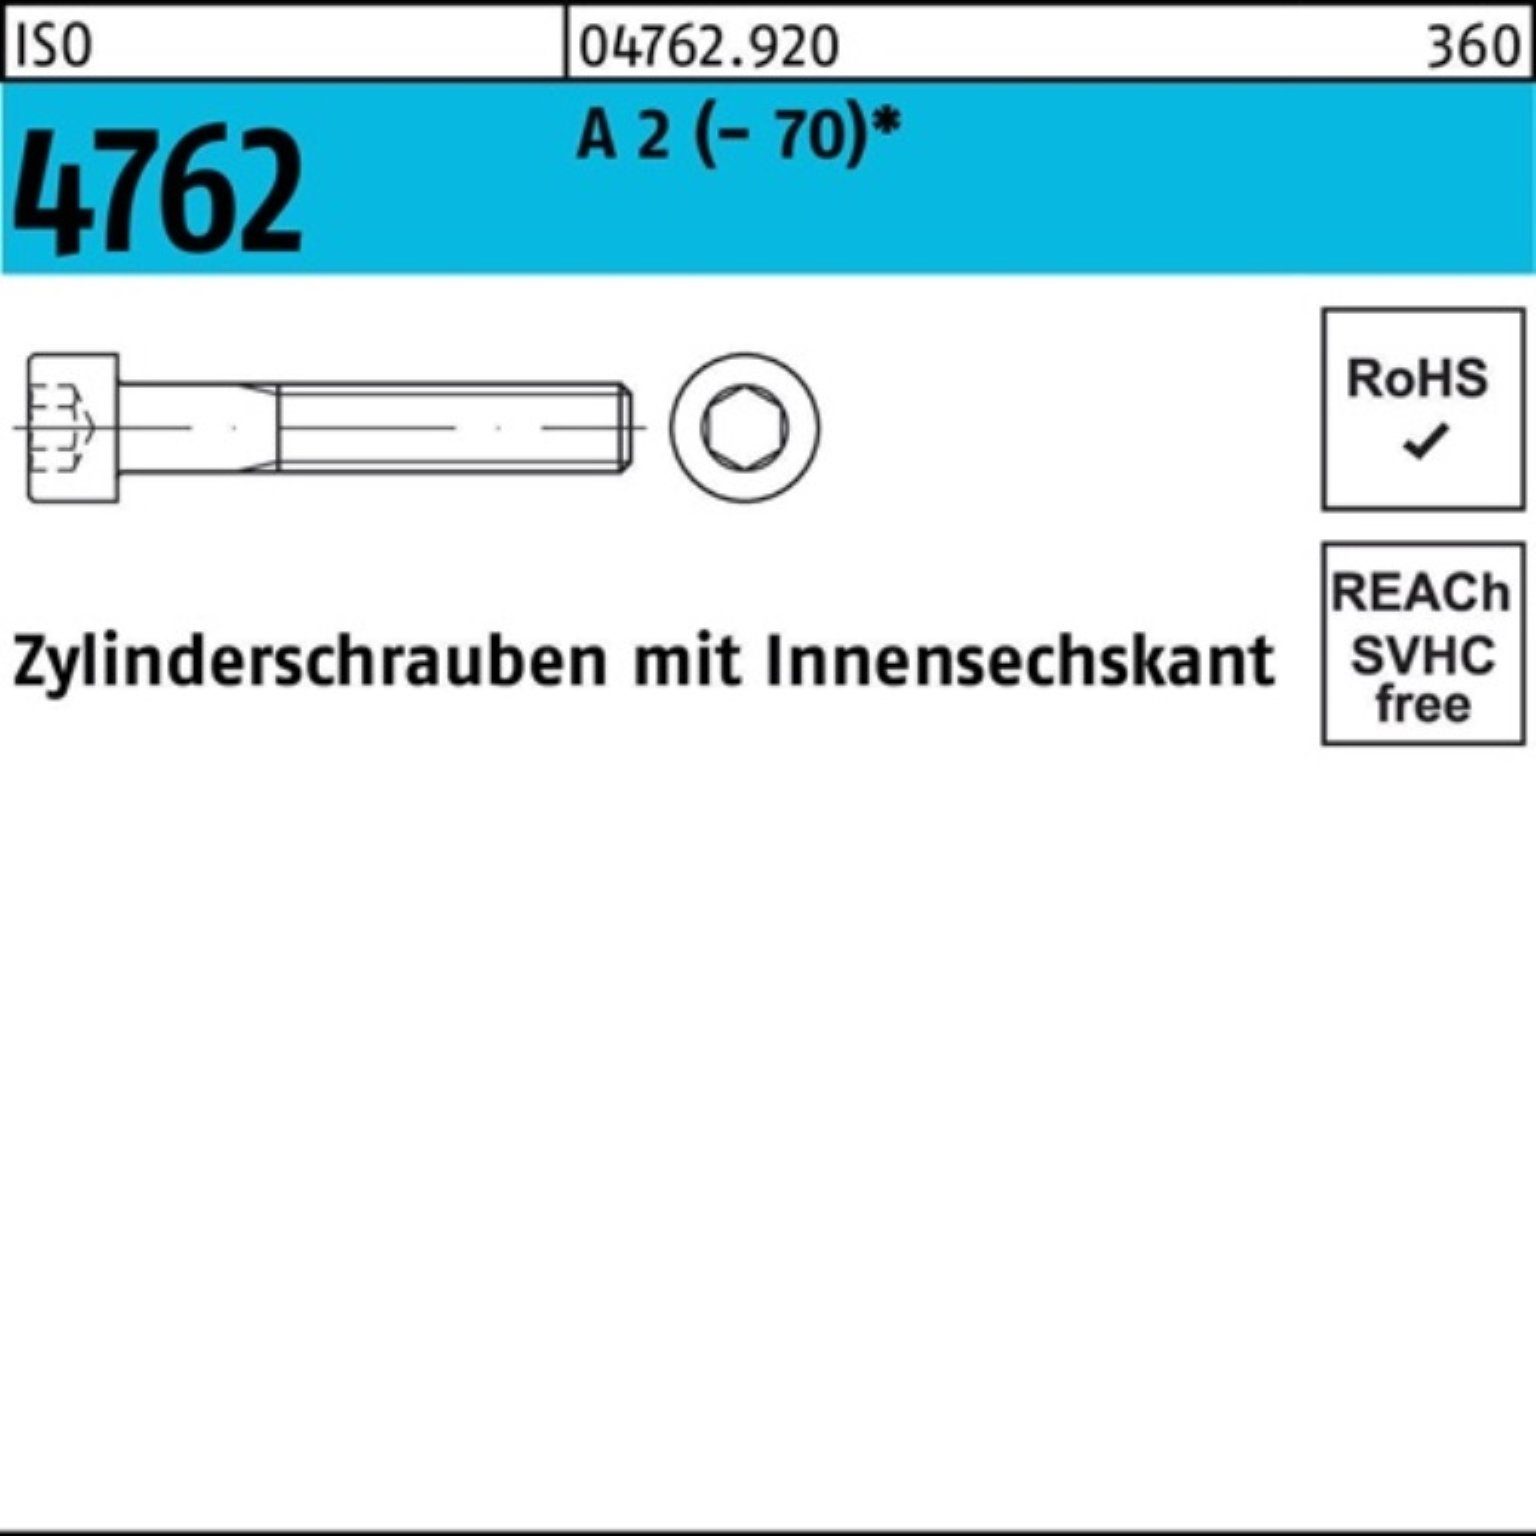 Zylinderschraube S 2 ISO (70) M12x 4762 Pack Reyher Zylinderschraube 100er Innen-6kt 140 1 A